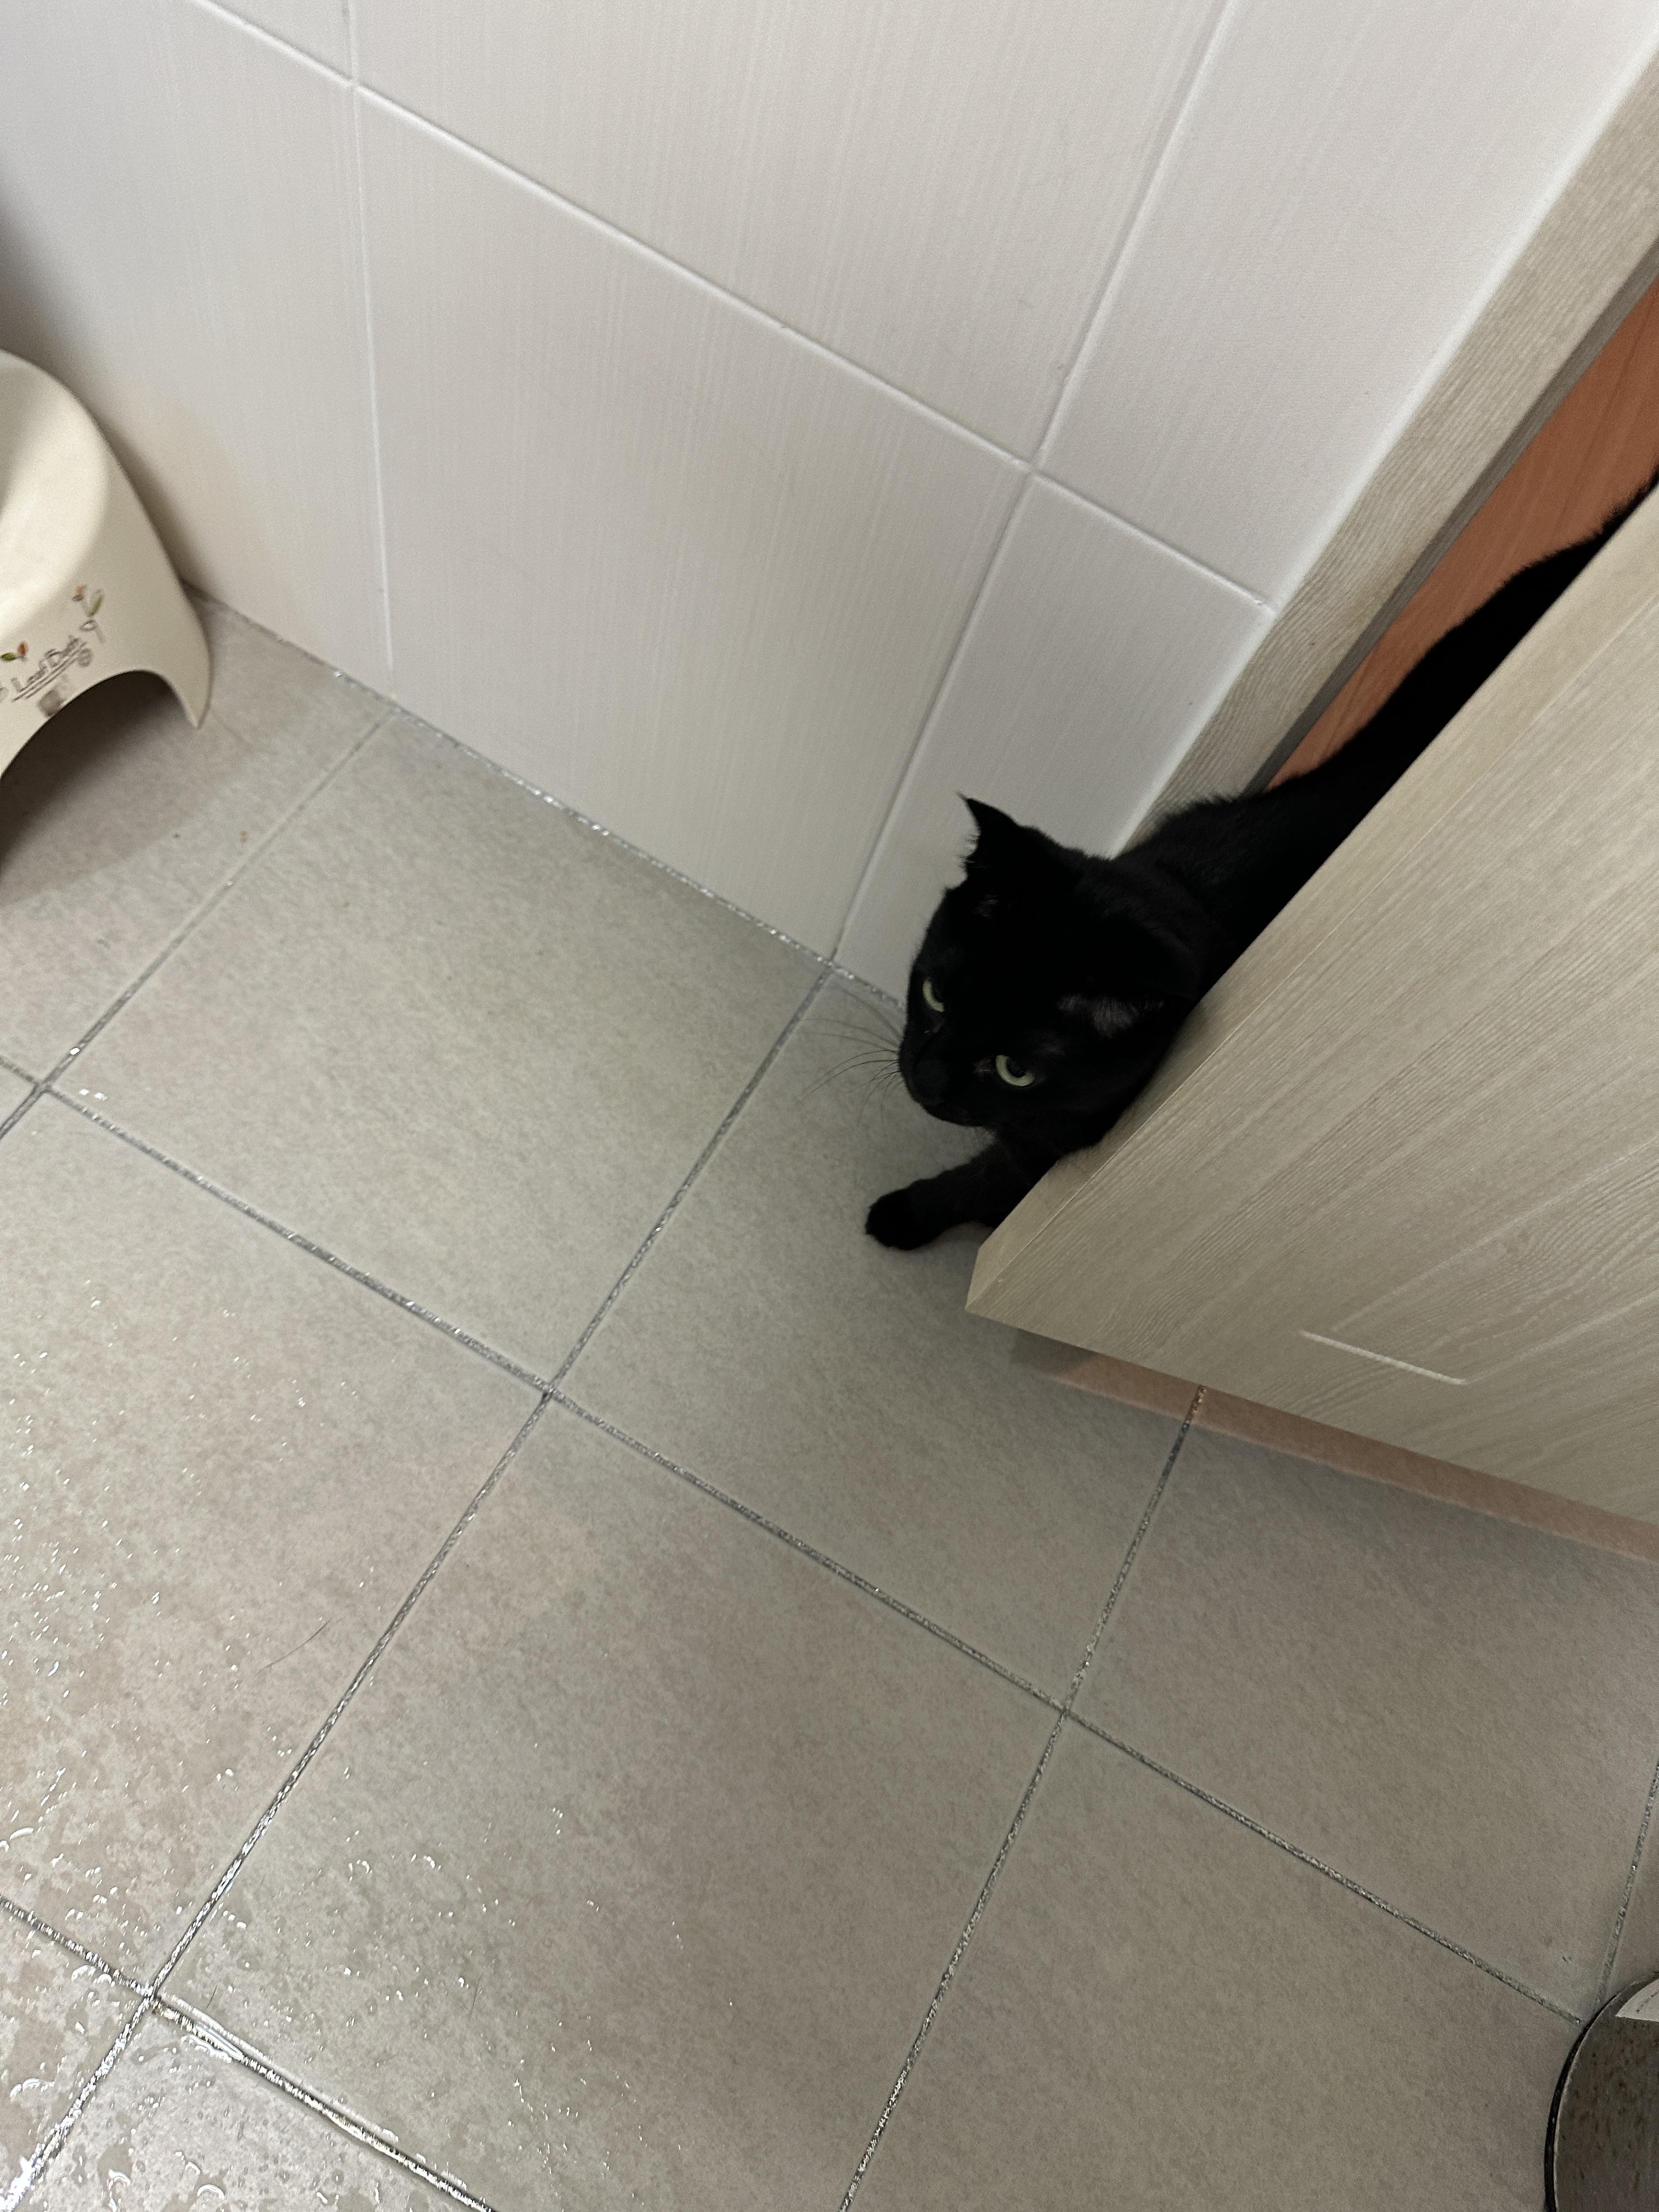 욕실에서도 고양이들의 사랑과 관심을 받는 집사 생활 (feat. 건이와 루디)